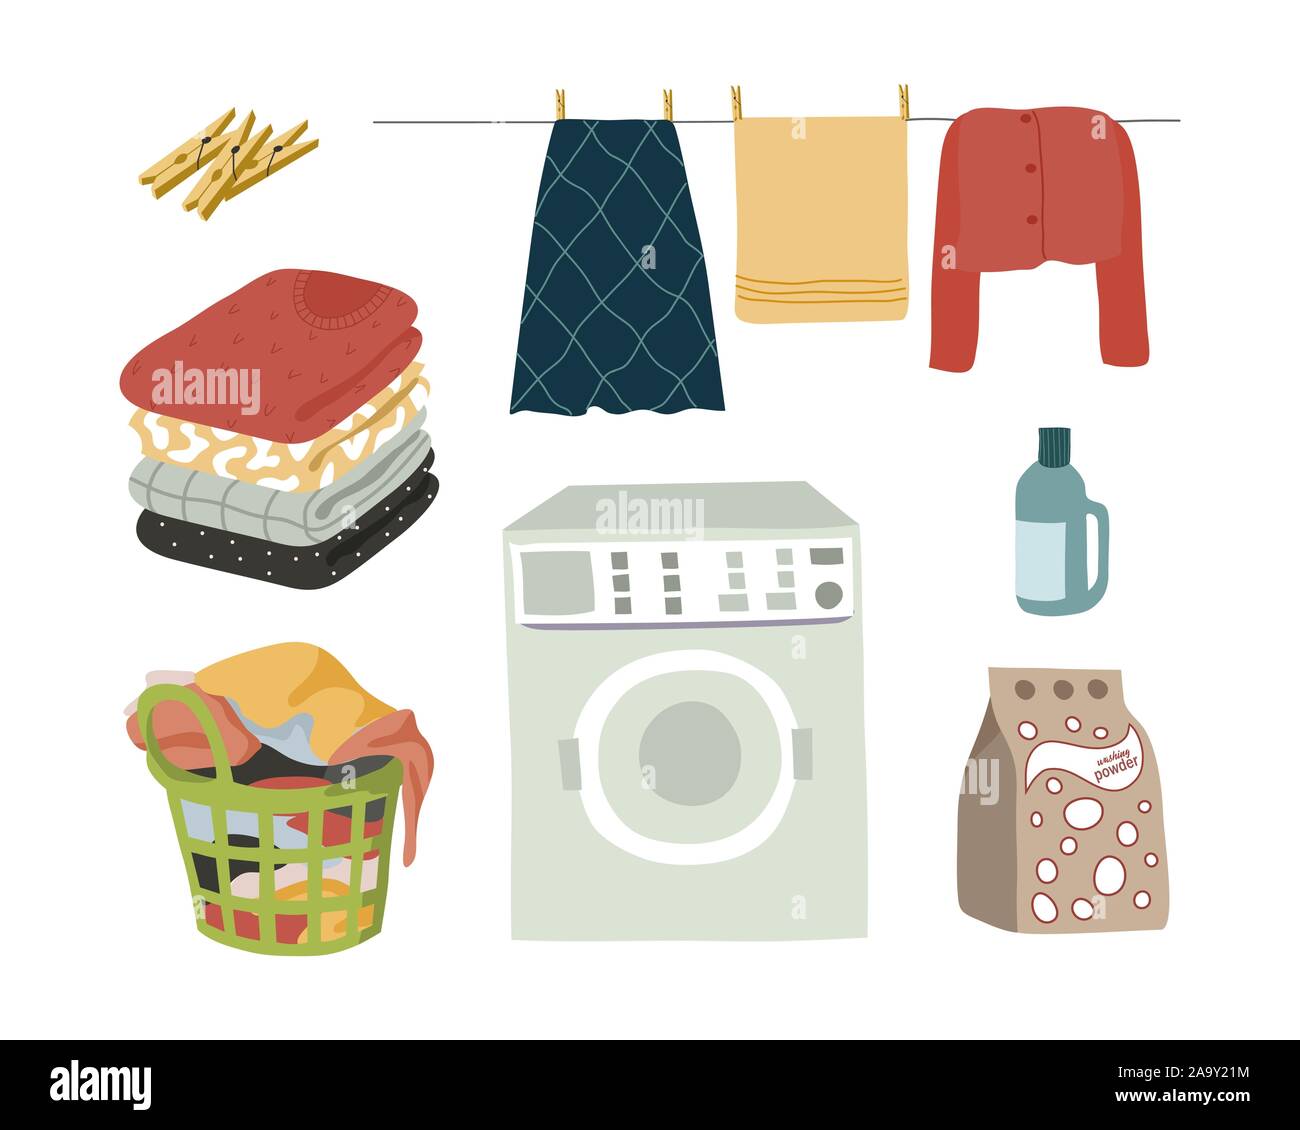 Wäsche set isolierte Elemente Pulver, Waschmaschine, nasse Kleidung mit Wäscheklammern, gefaltete Kleidung und ein Korb mit schmutziger Wäsche. Vektor flach Stock Vektor